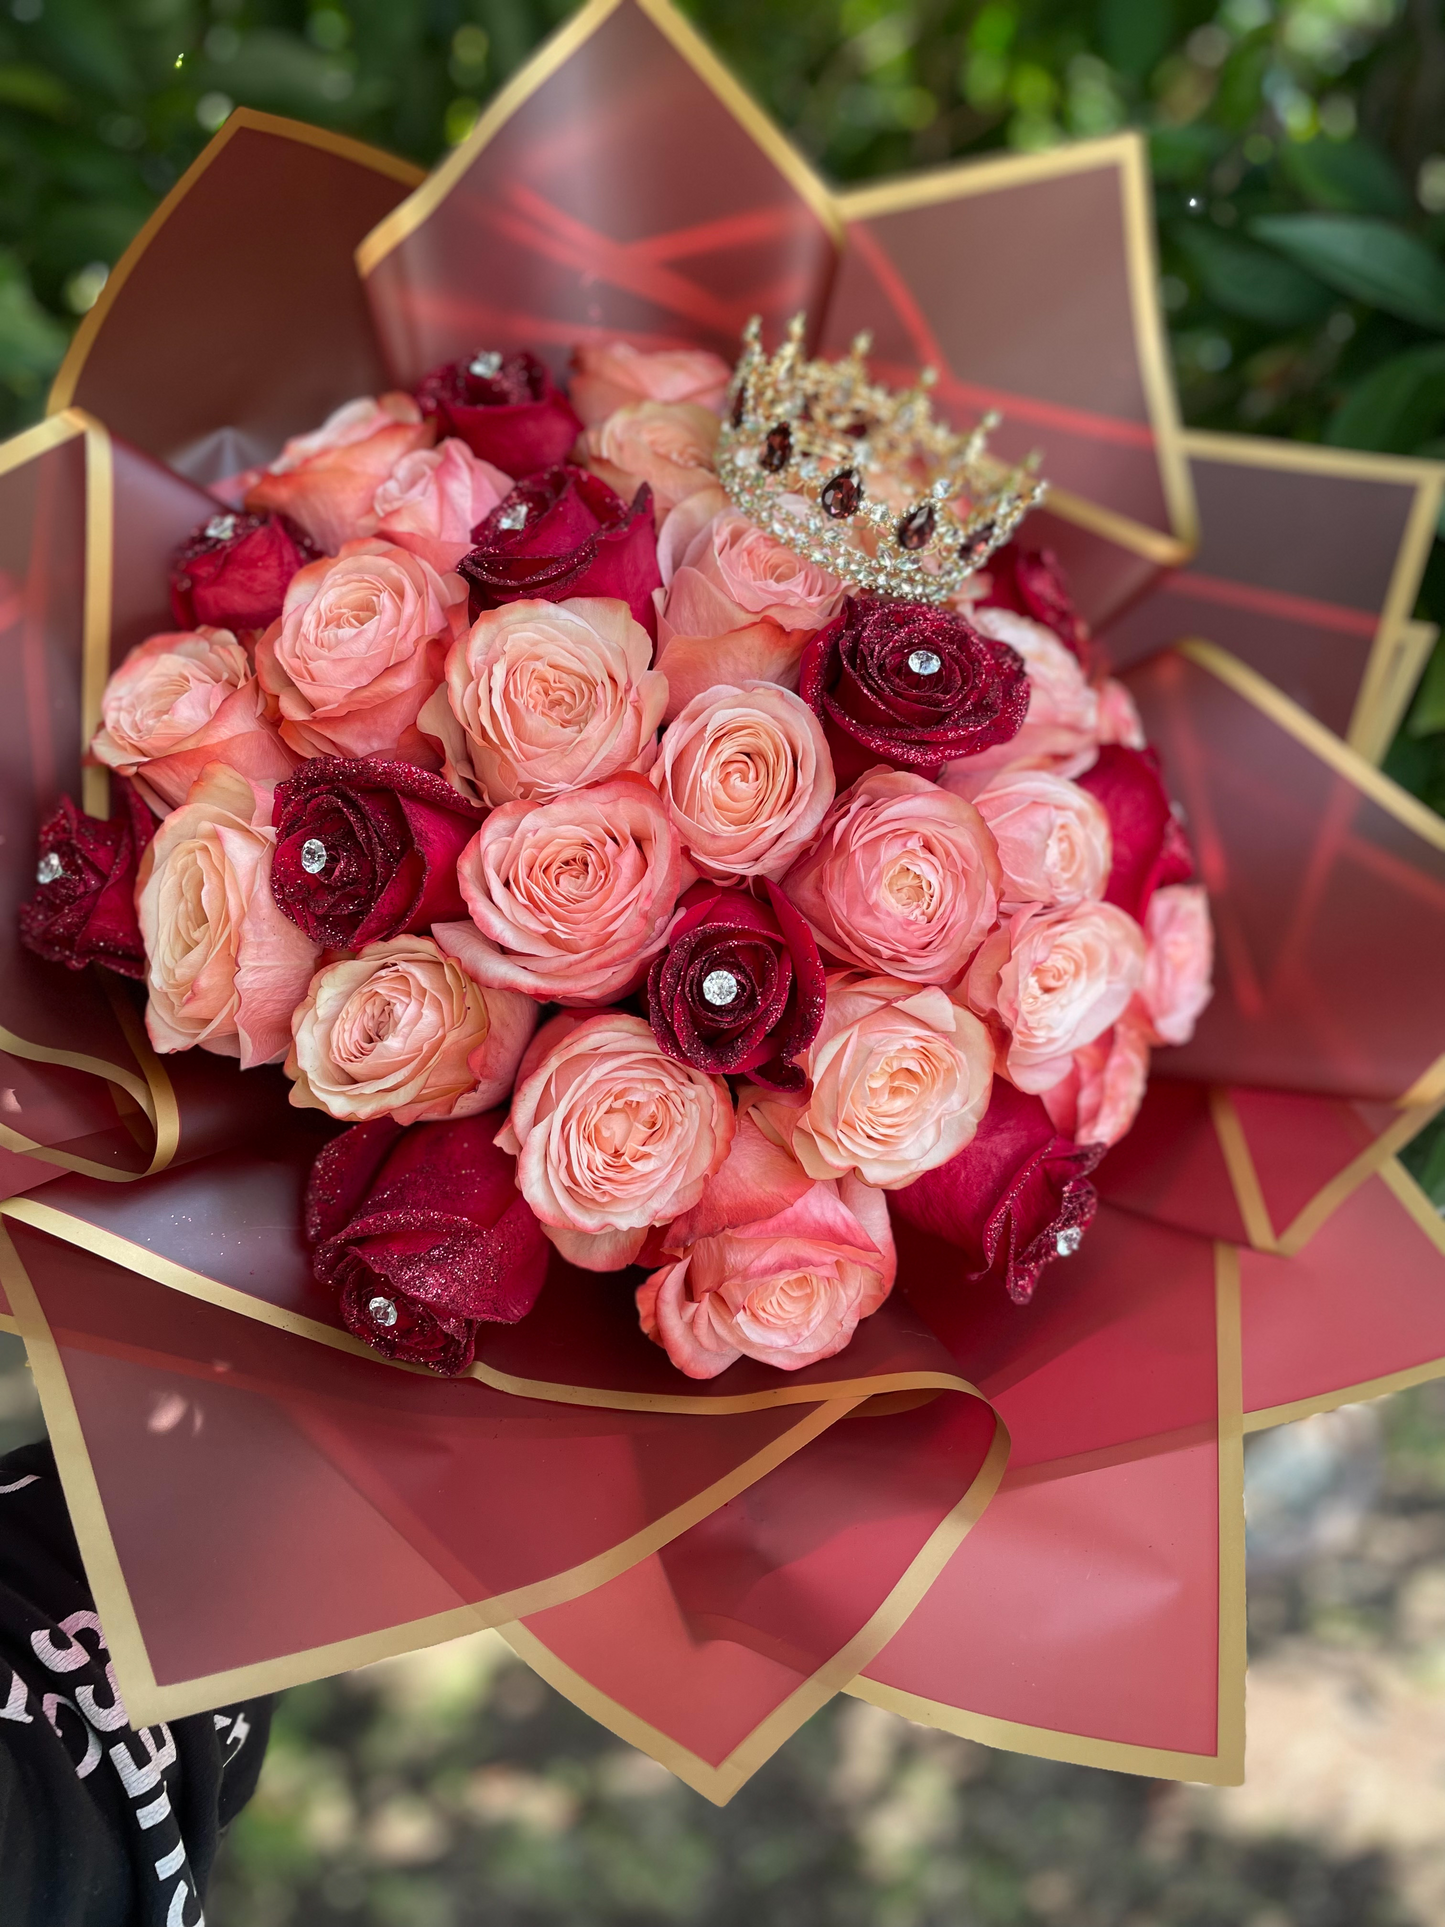 R de Rosas Eternas🌹  Ribbon rose bouquets, Ribbon flowers bouquet,  Valentine gifts